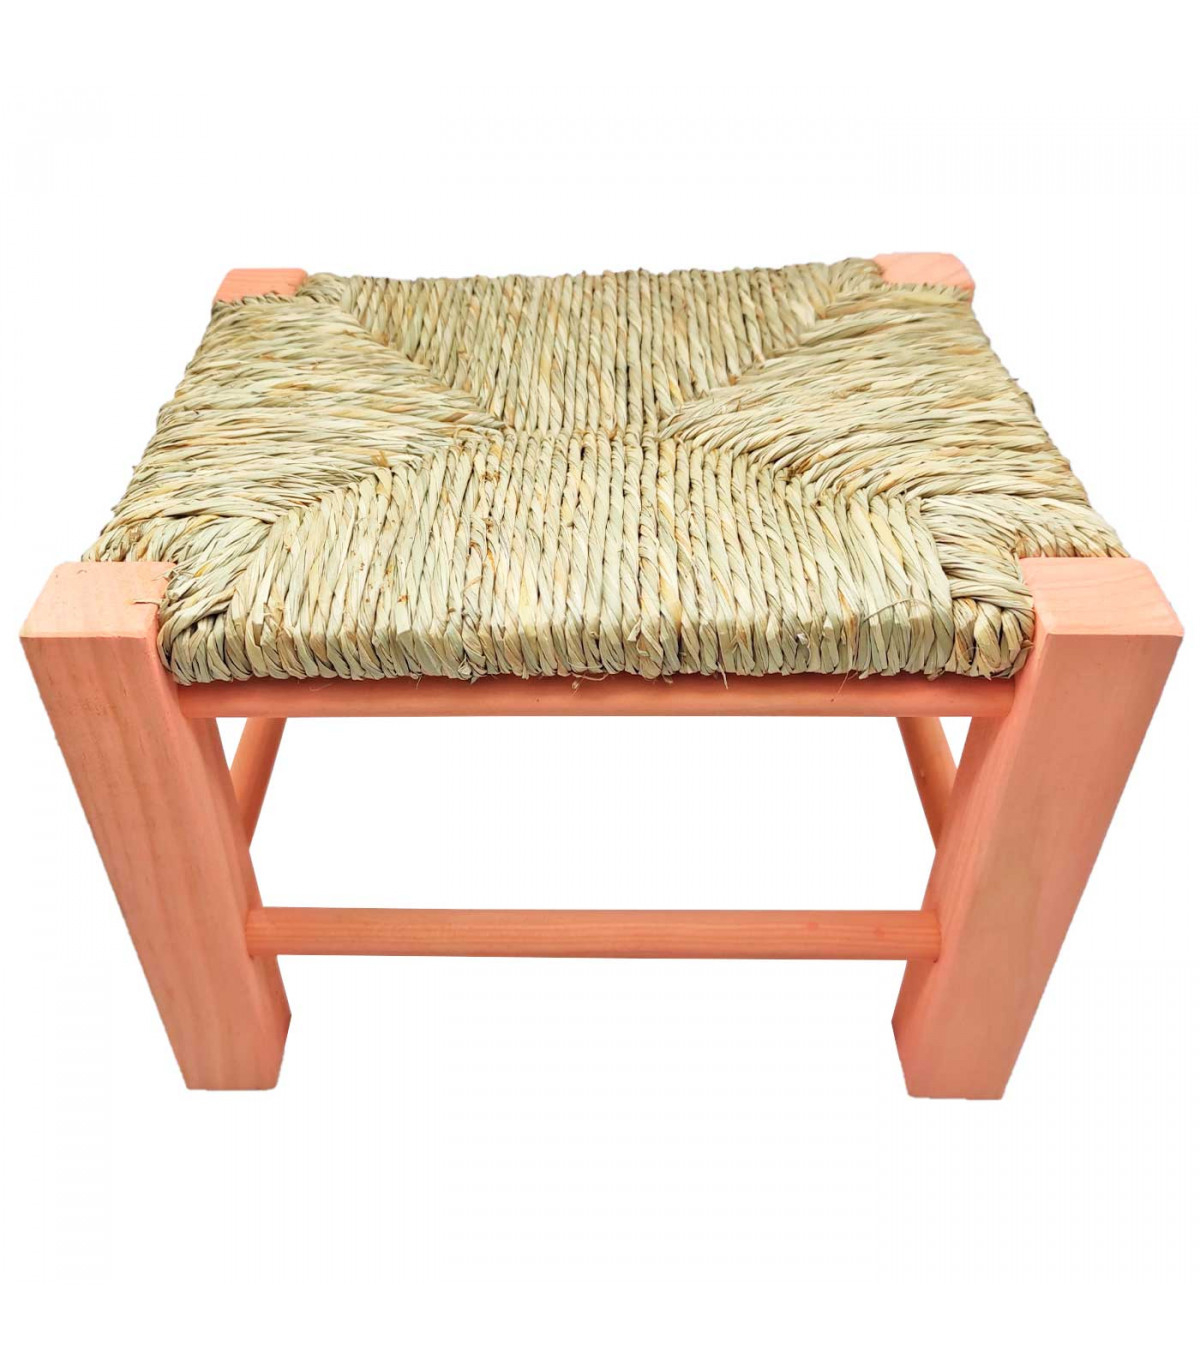 Muebles de bambú, rafia y ratán para niños. Decoración infantil